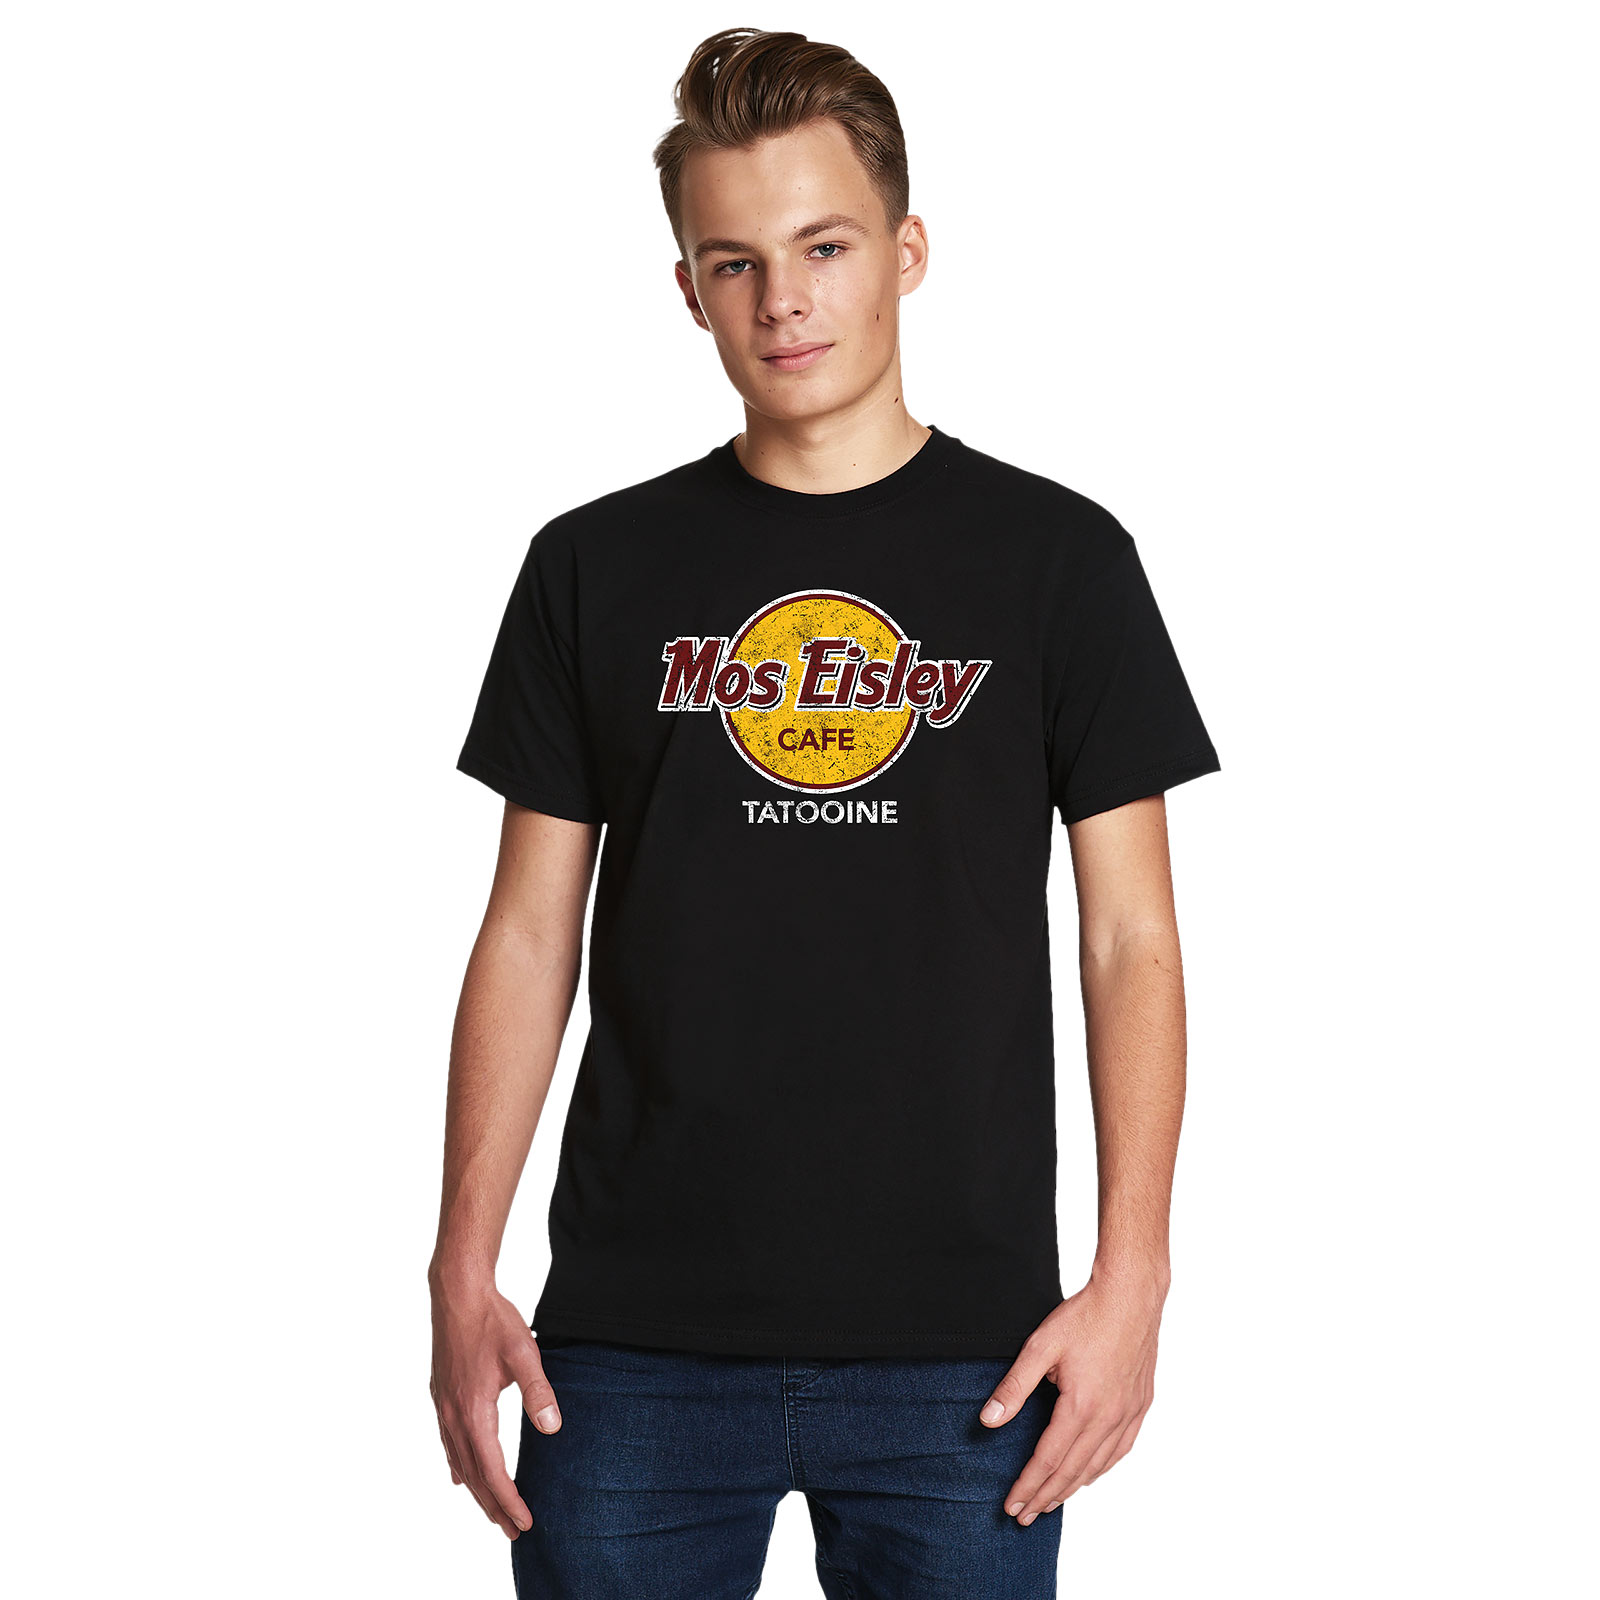 Mos Eisley Cafe T-Shirt für Star Wars Fans schwarz